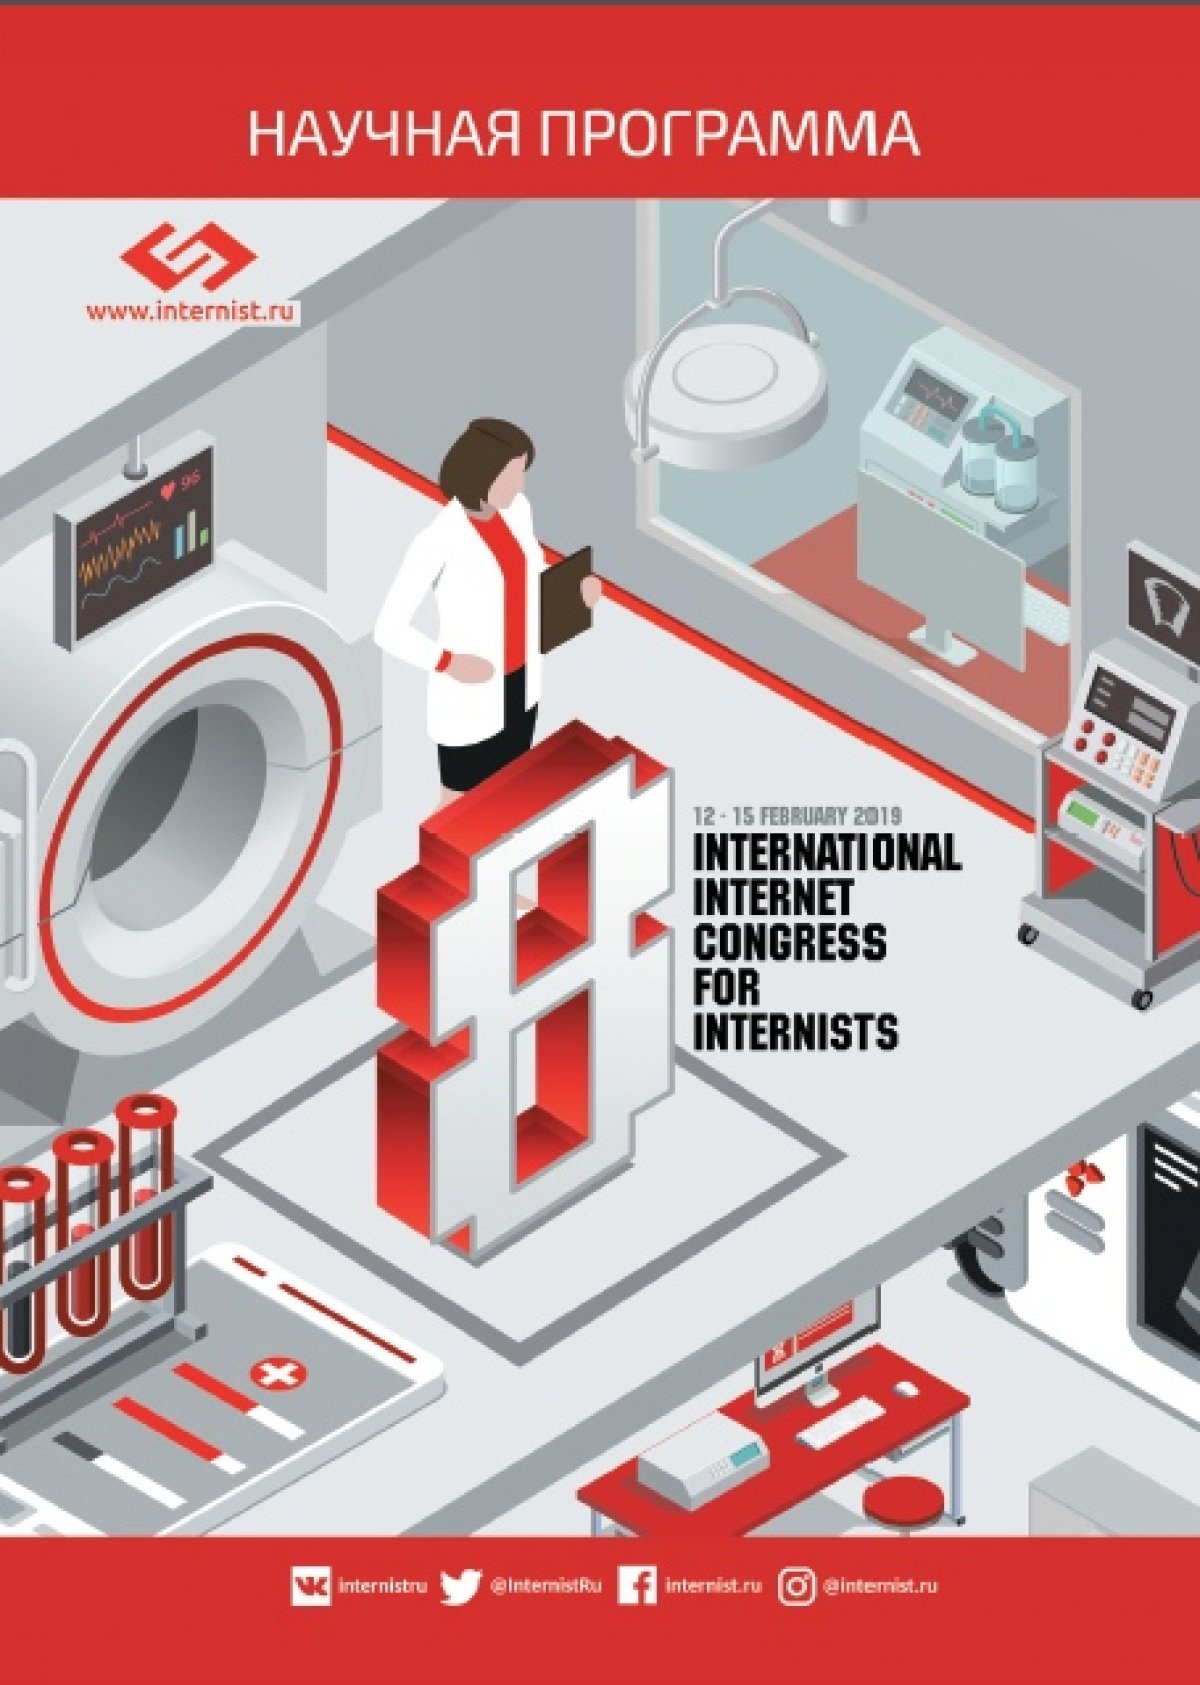 12 февраля 2019 года с 13:20 по местному времени начинает работу VIII Международный Интернет-Конгресс специалистов по внутренним болезням. Интернет-Конгресс проводится в виде интернет-трансляции в режиме онлайн.